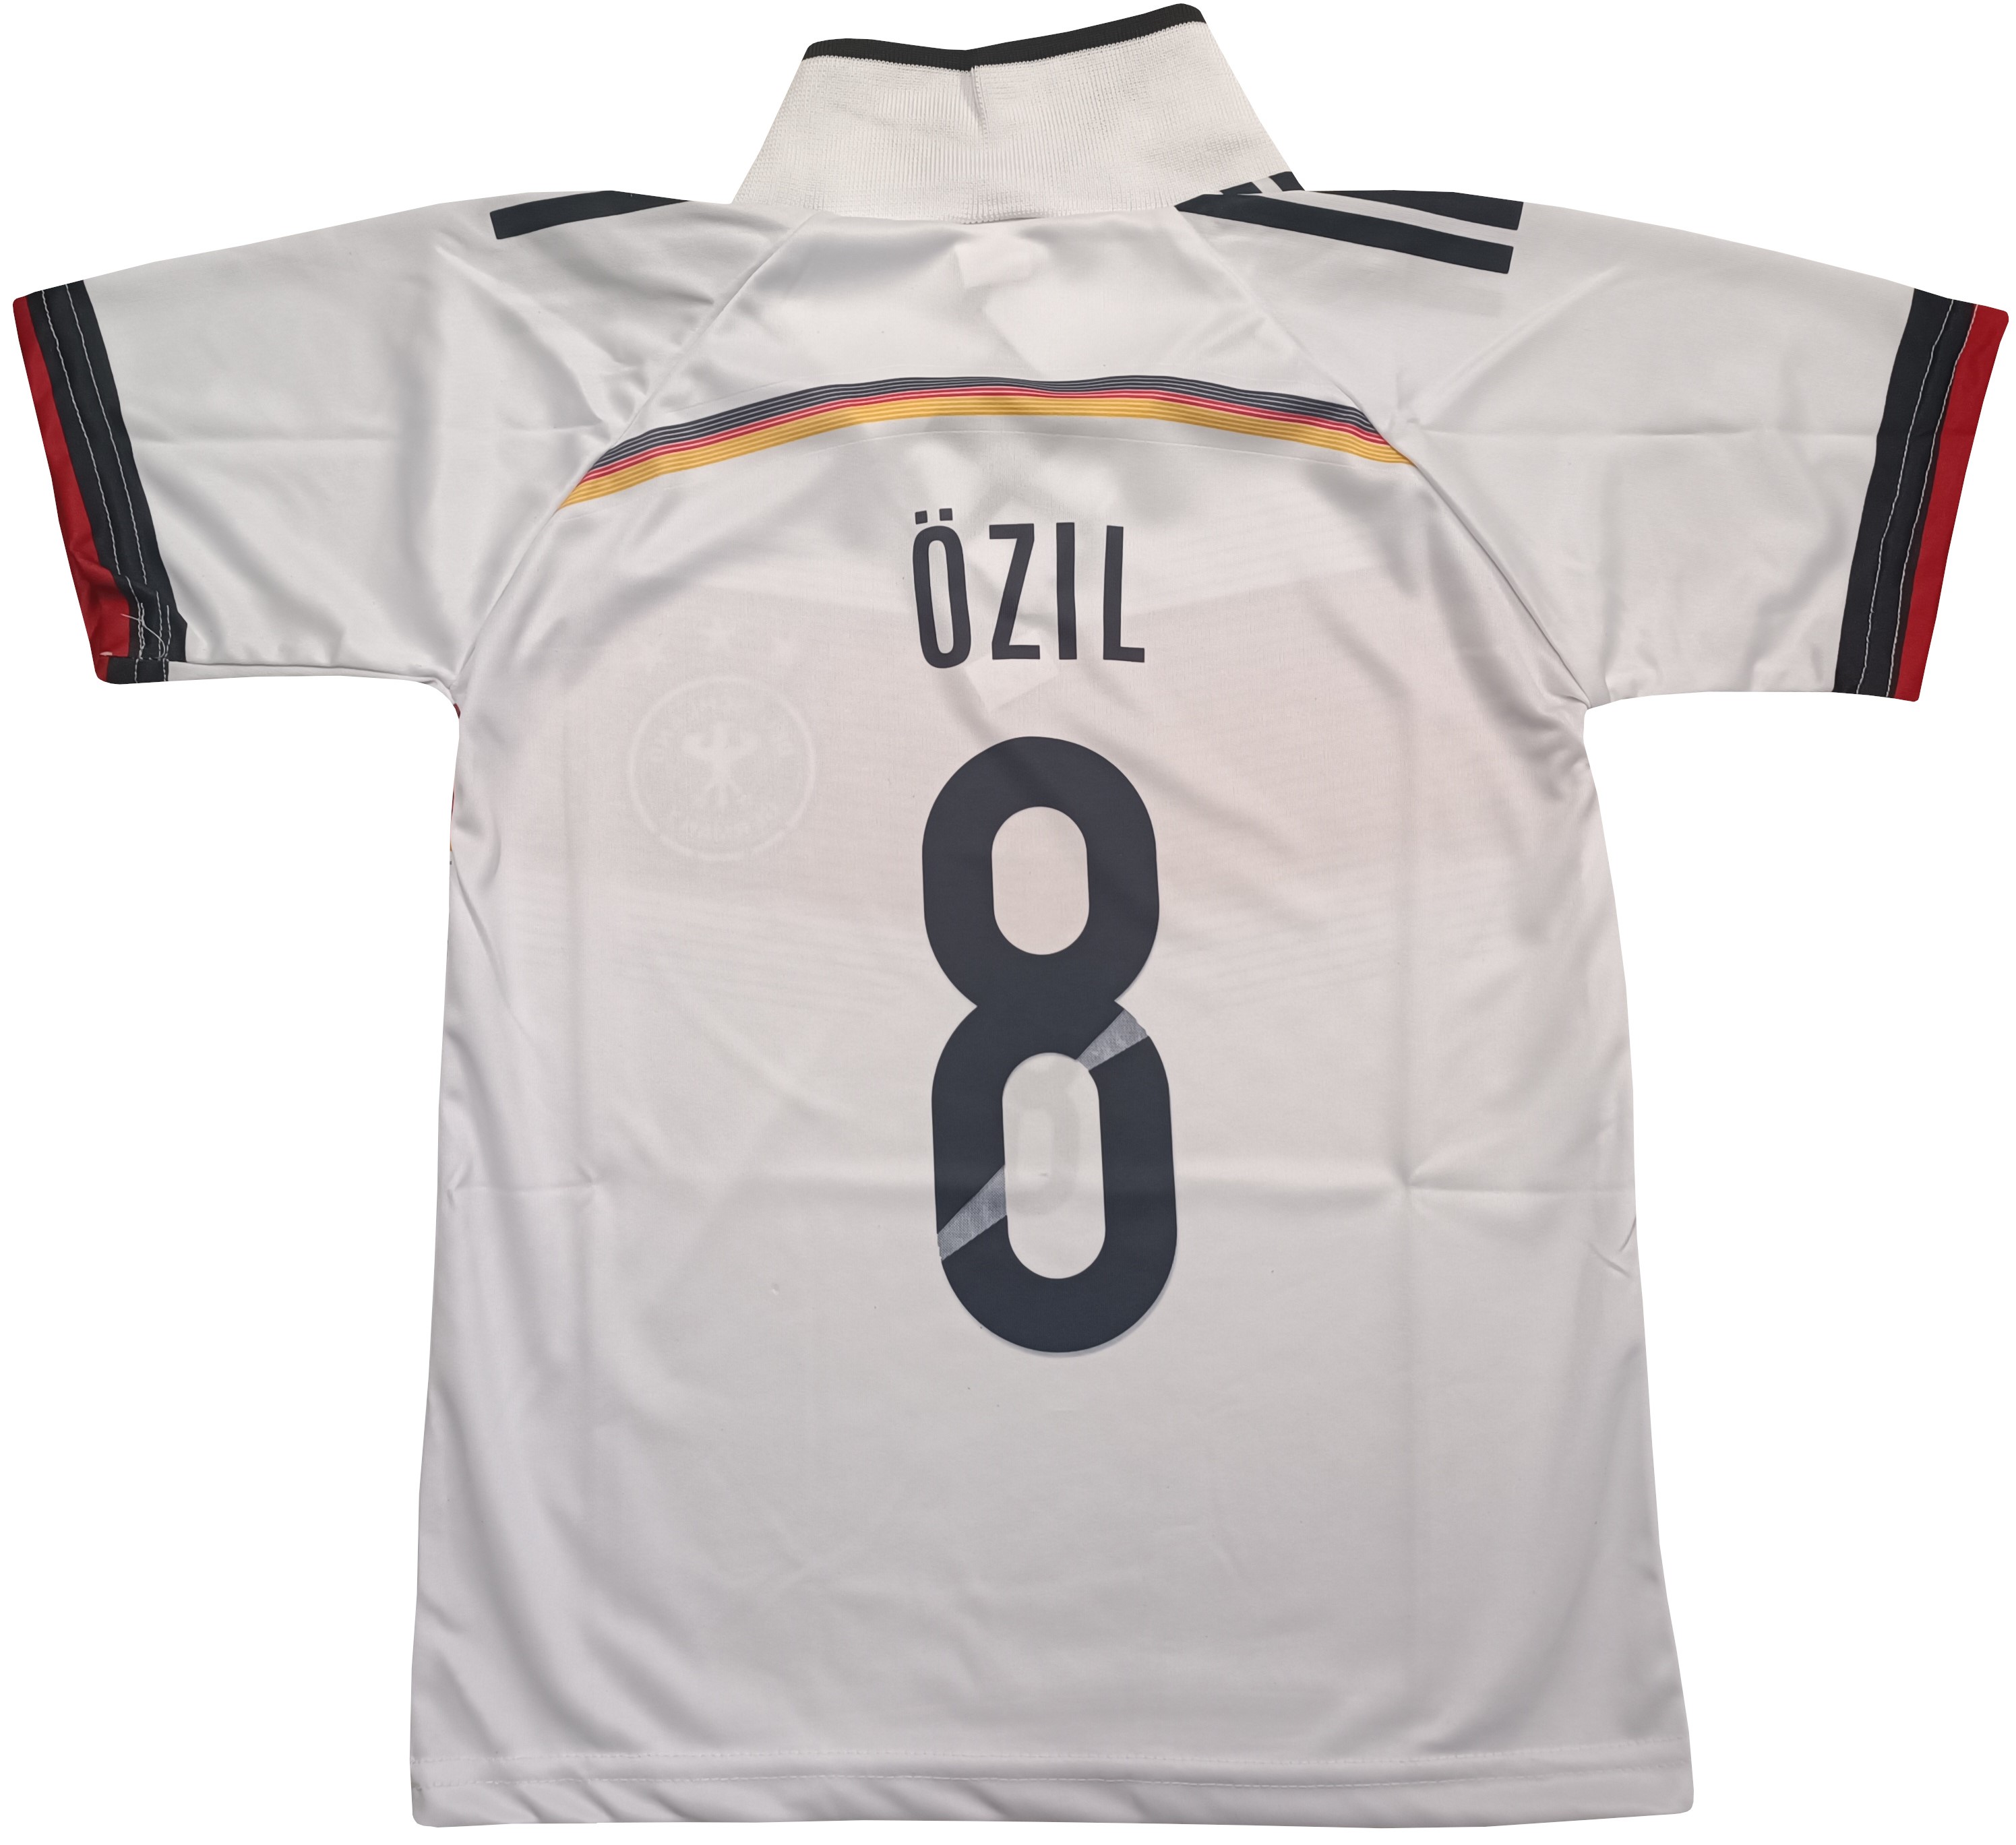 Fotbalový dres Ozil 8 Německo - výprodej Velikost: 146 cm (9-10 let) povánoční sleva